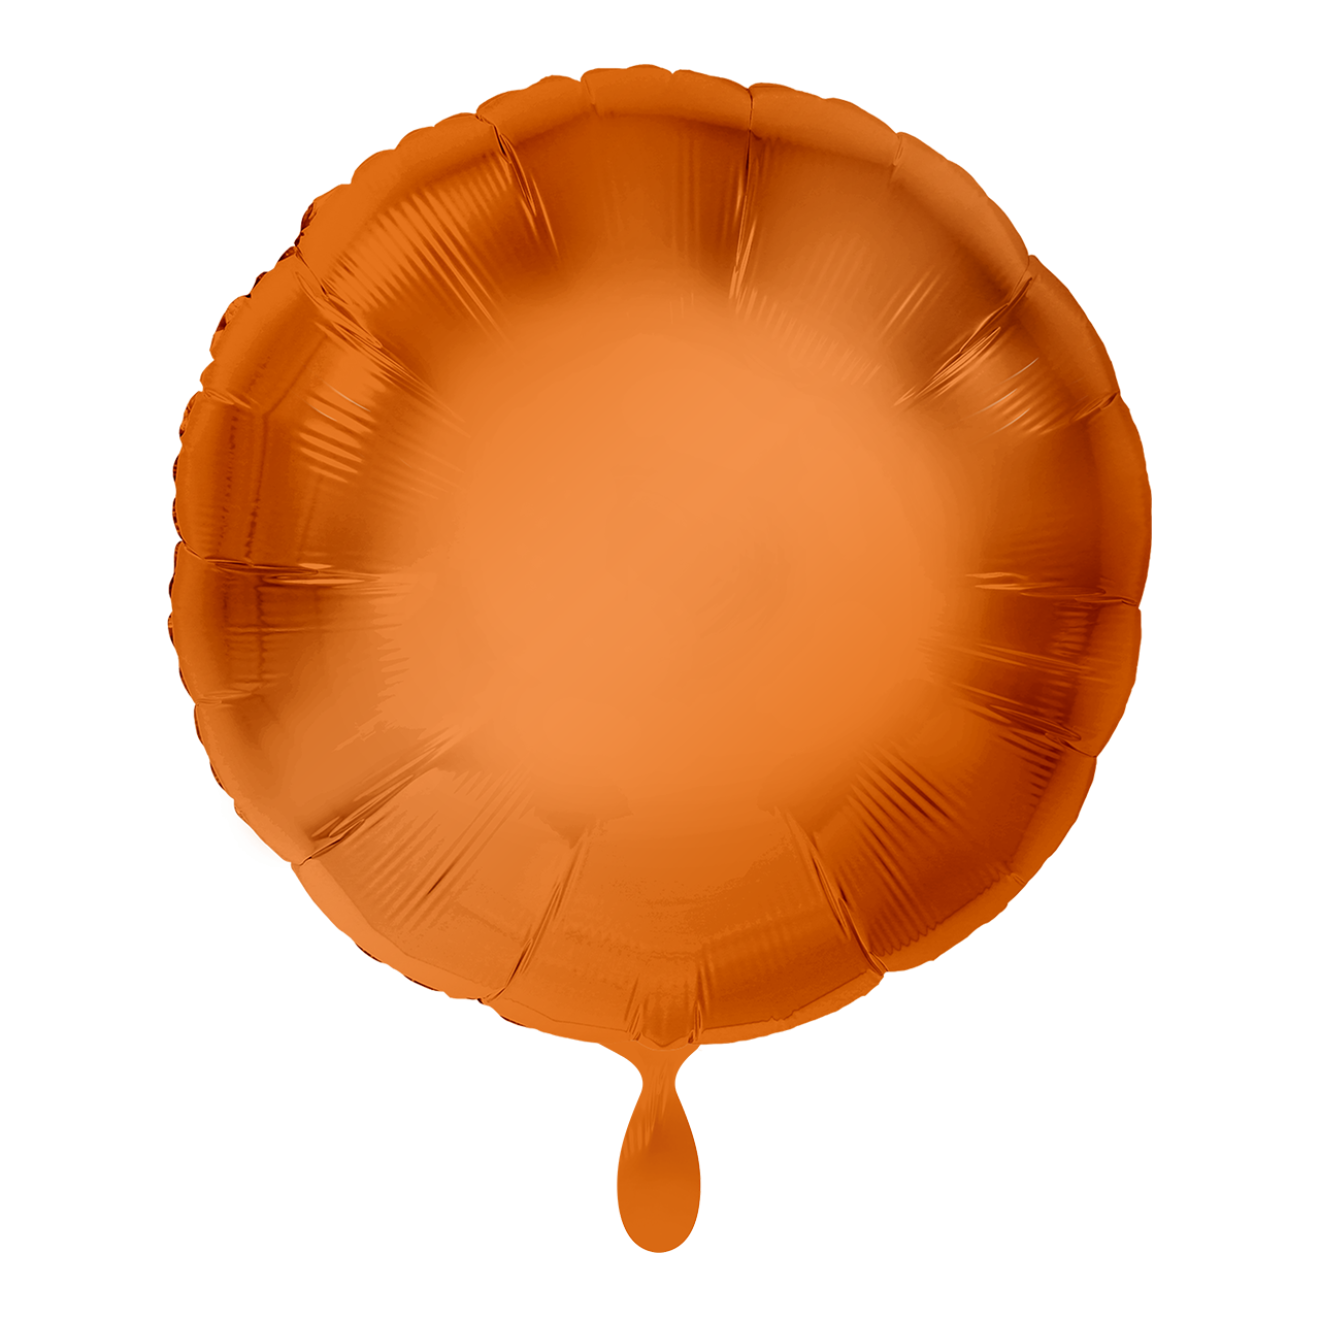 1 Balloon - Rund - Orange